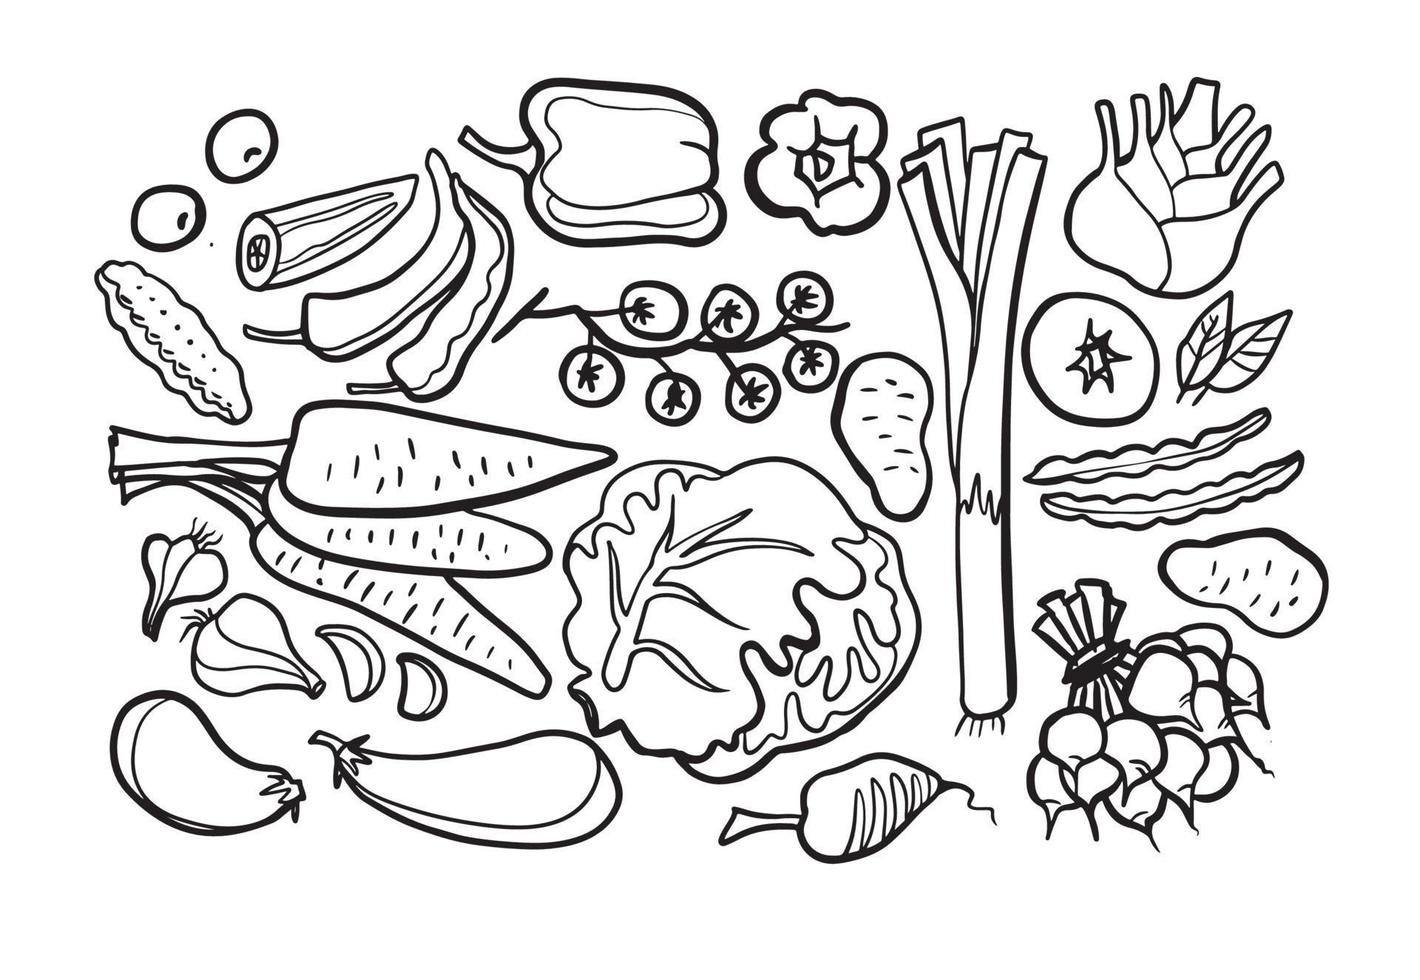 raccolta di disegni di doodle di verdure. verdure come carote, mais, zenzero, cetriolo, cavolo, patate, ecc. illustrazioni di doodle vettoriali disegnate a mano in nero isolato su sfondo bianco.